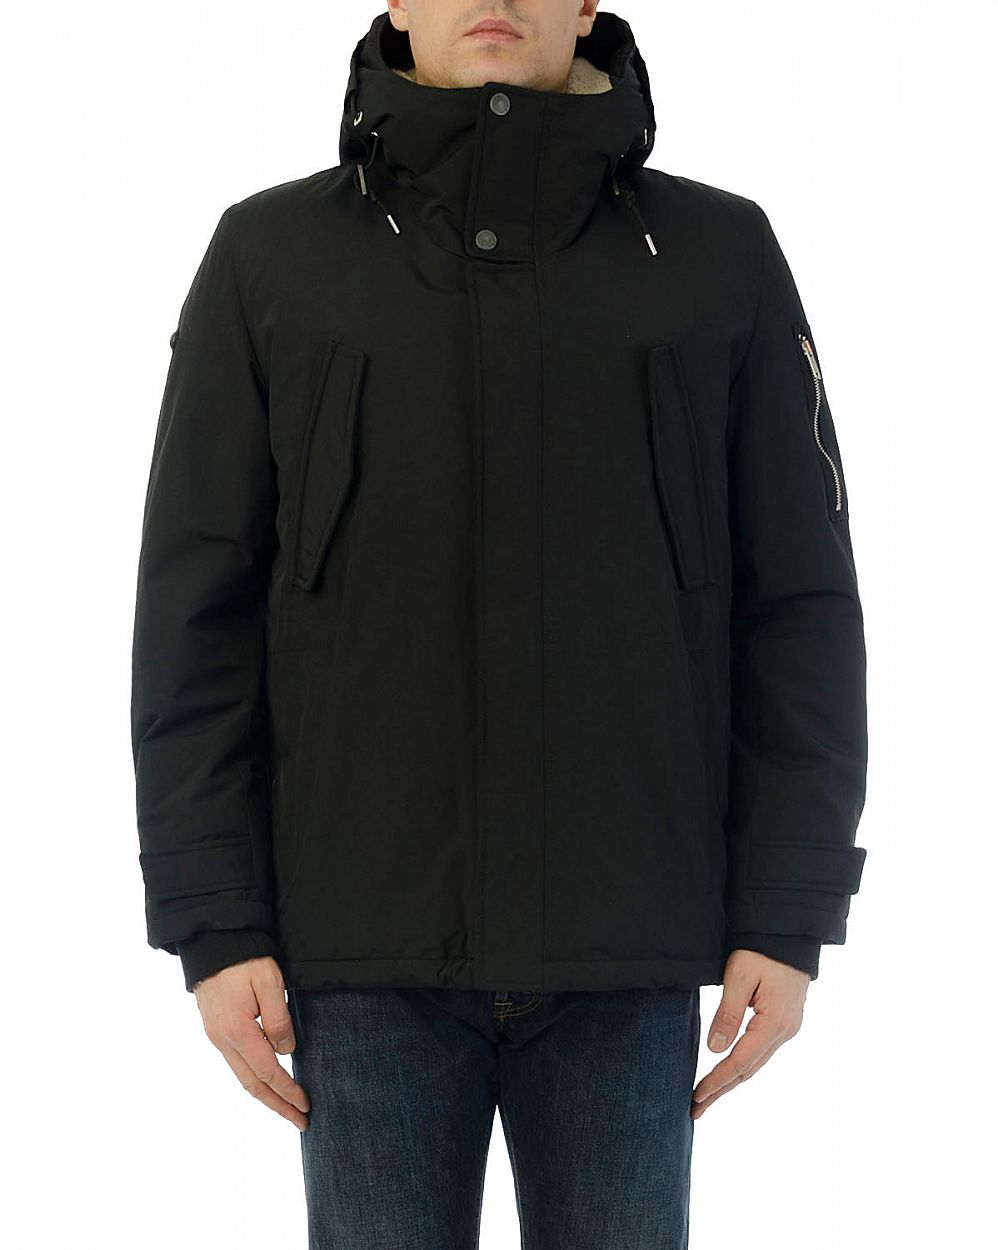 Куртка мужская водоотталкивающая демисезонная Loading 45 Black отзывы